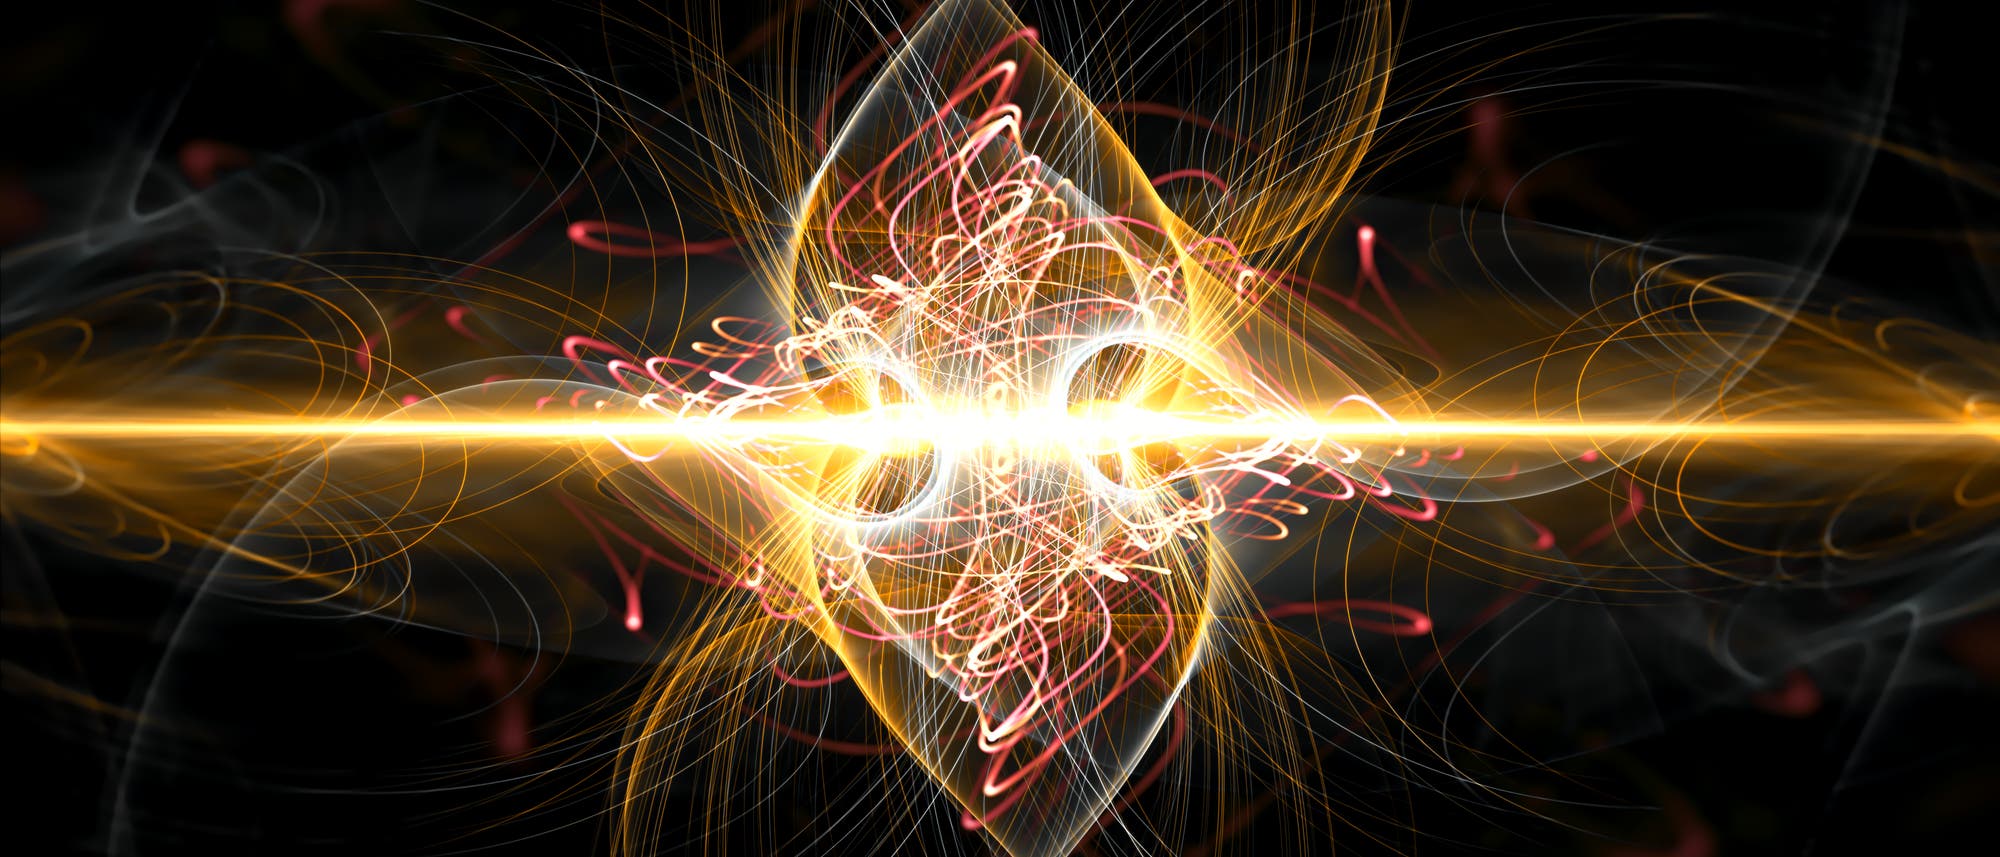 Steckt ein exotisches Quantenfeld hinter der Dunklen Energie?